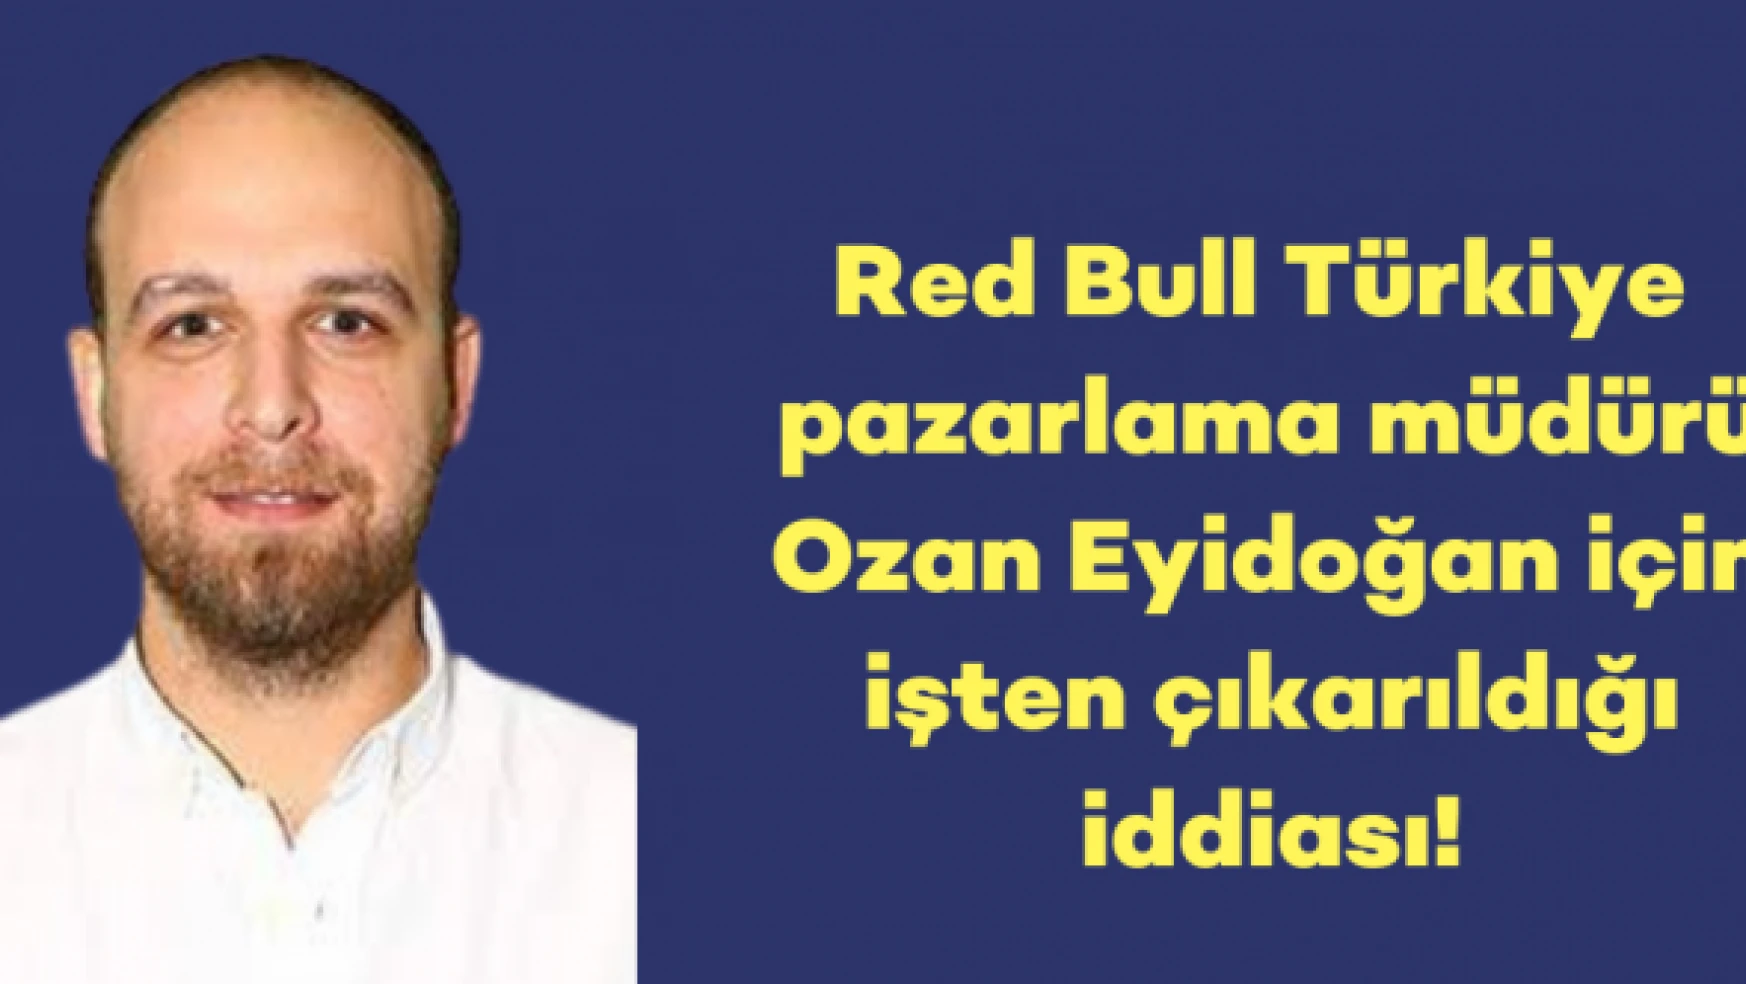 Red Bull Türkiye pazarlama müdürü için işten çıkarıldığı iddiası!